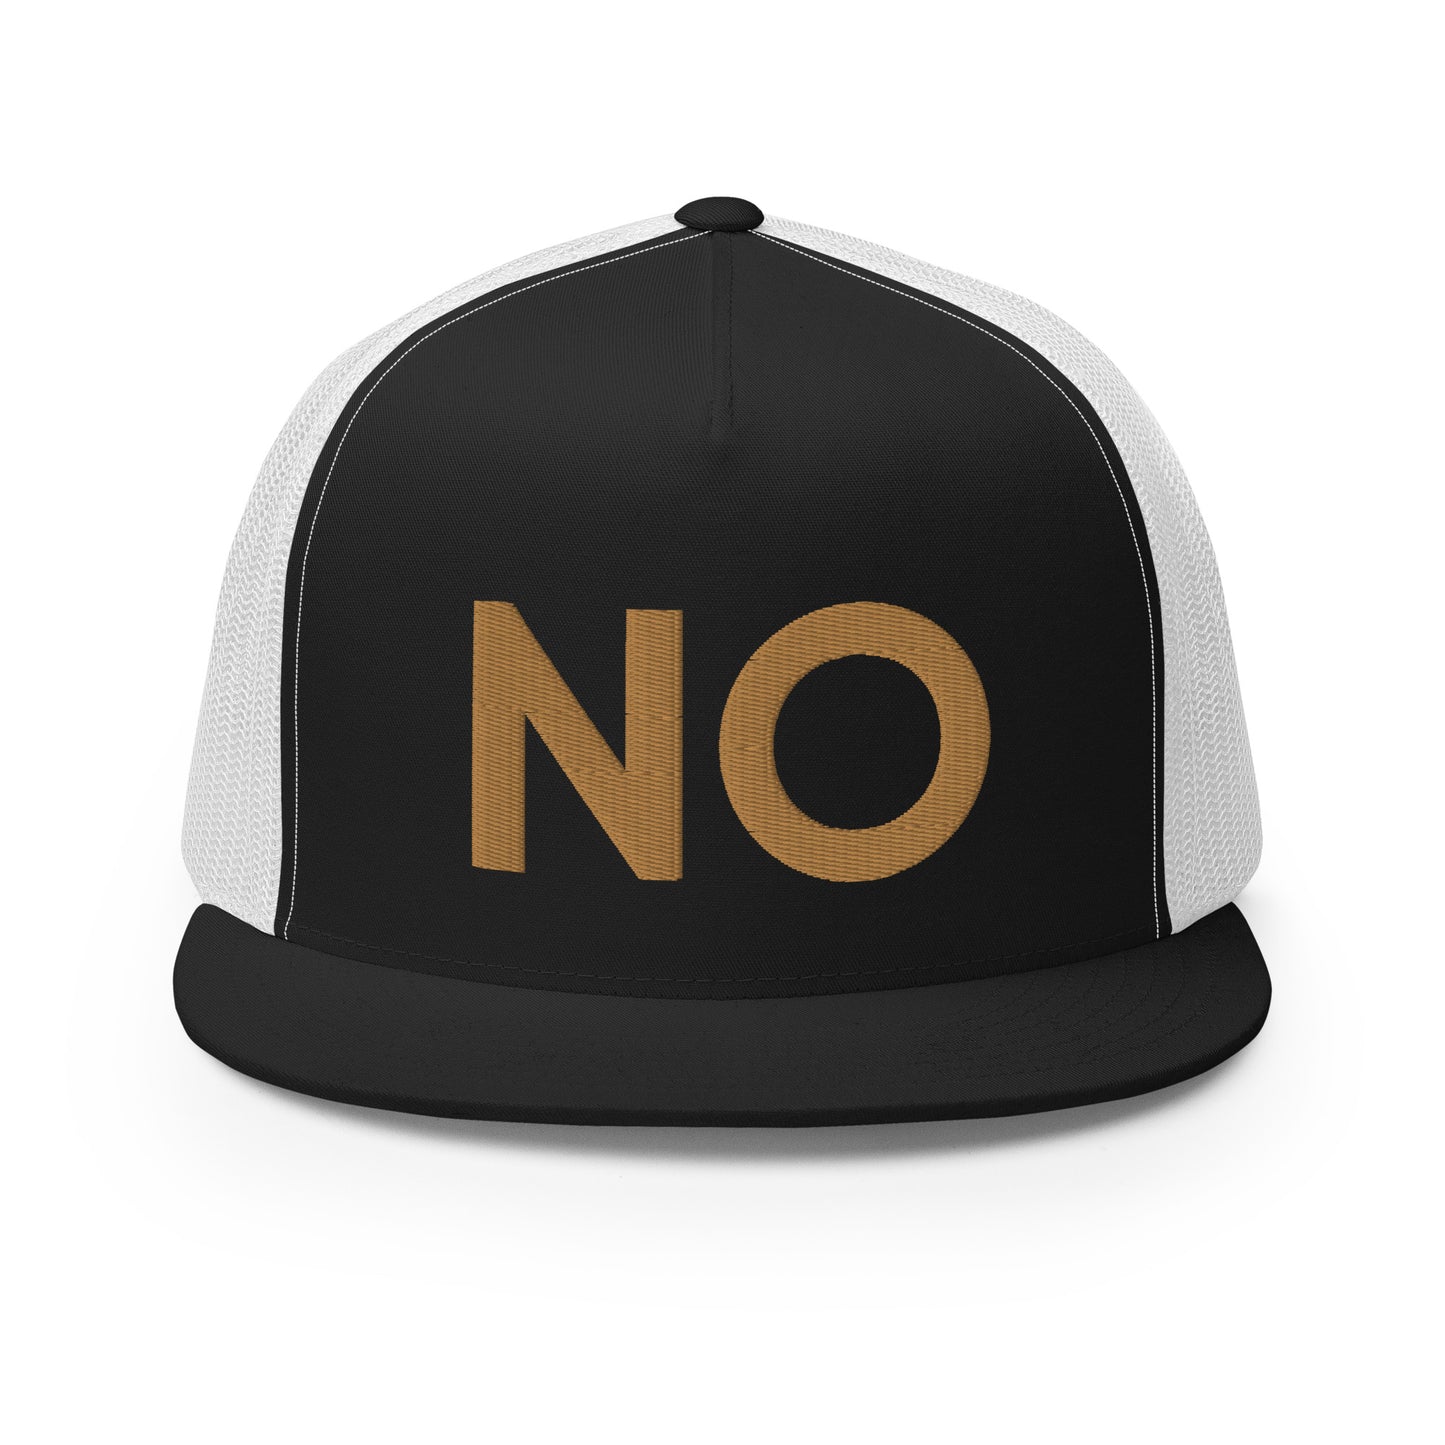 NO New Orleans Trucker Hat